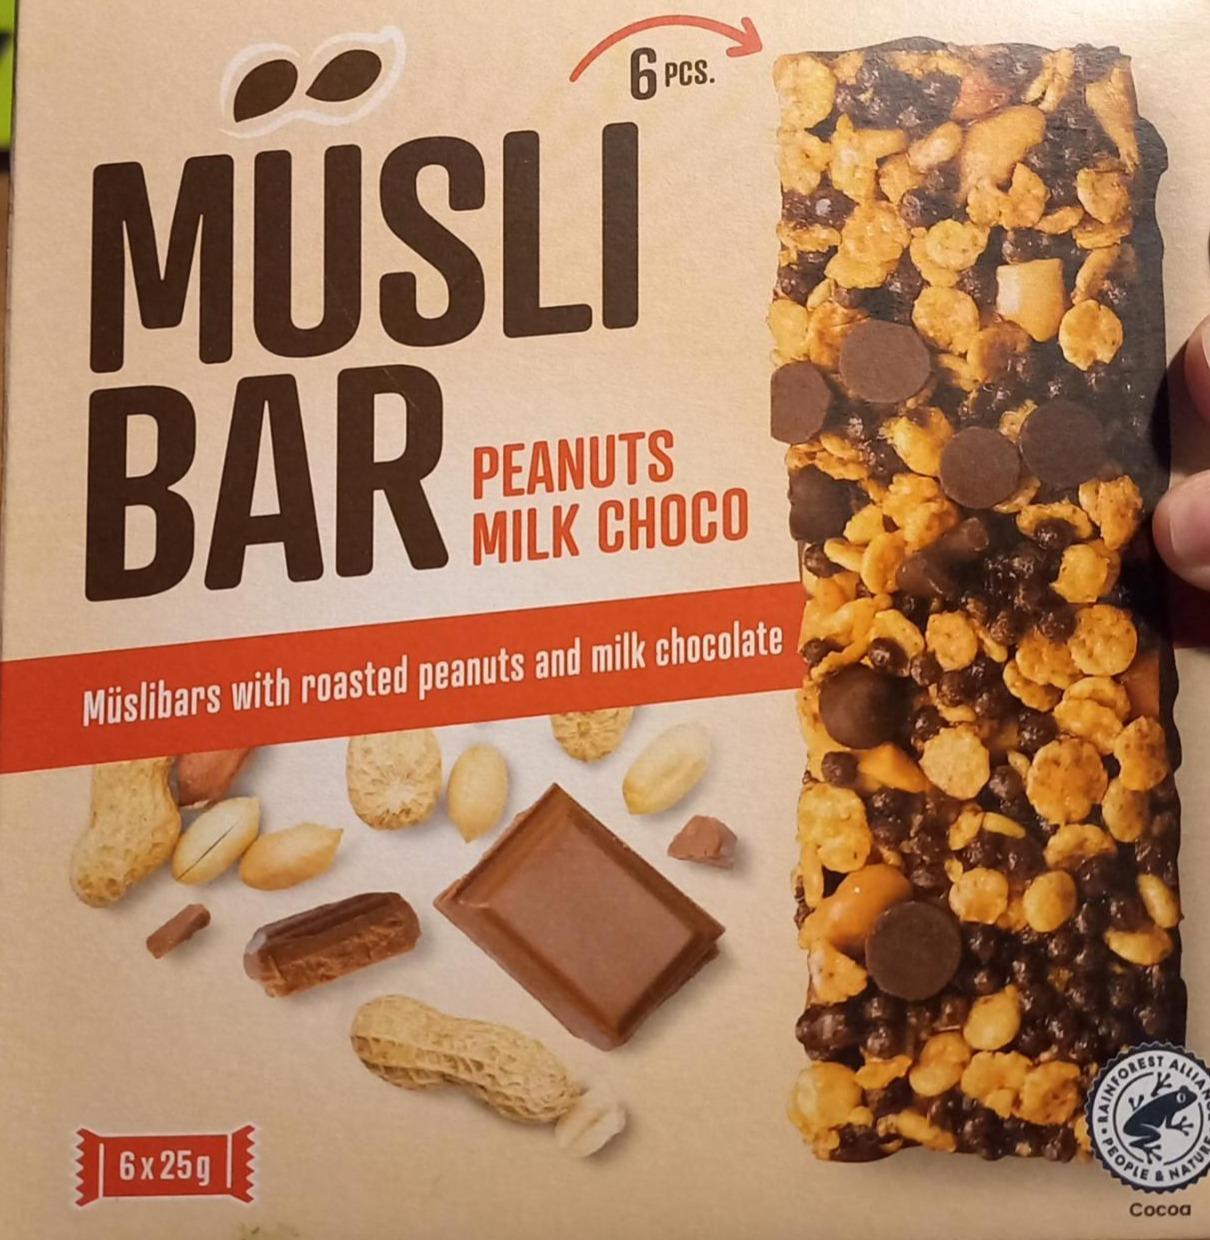 Фото - Muesli peanuts milk choco Musli bar